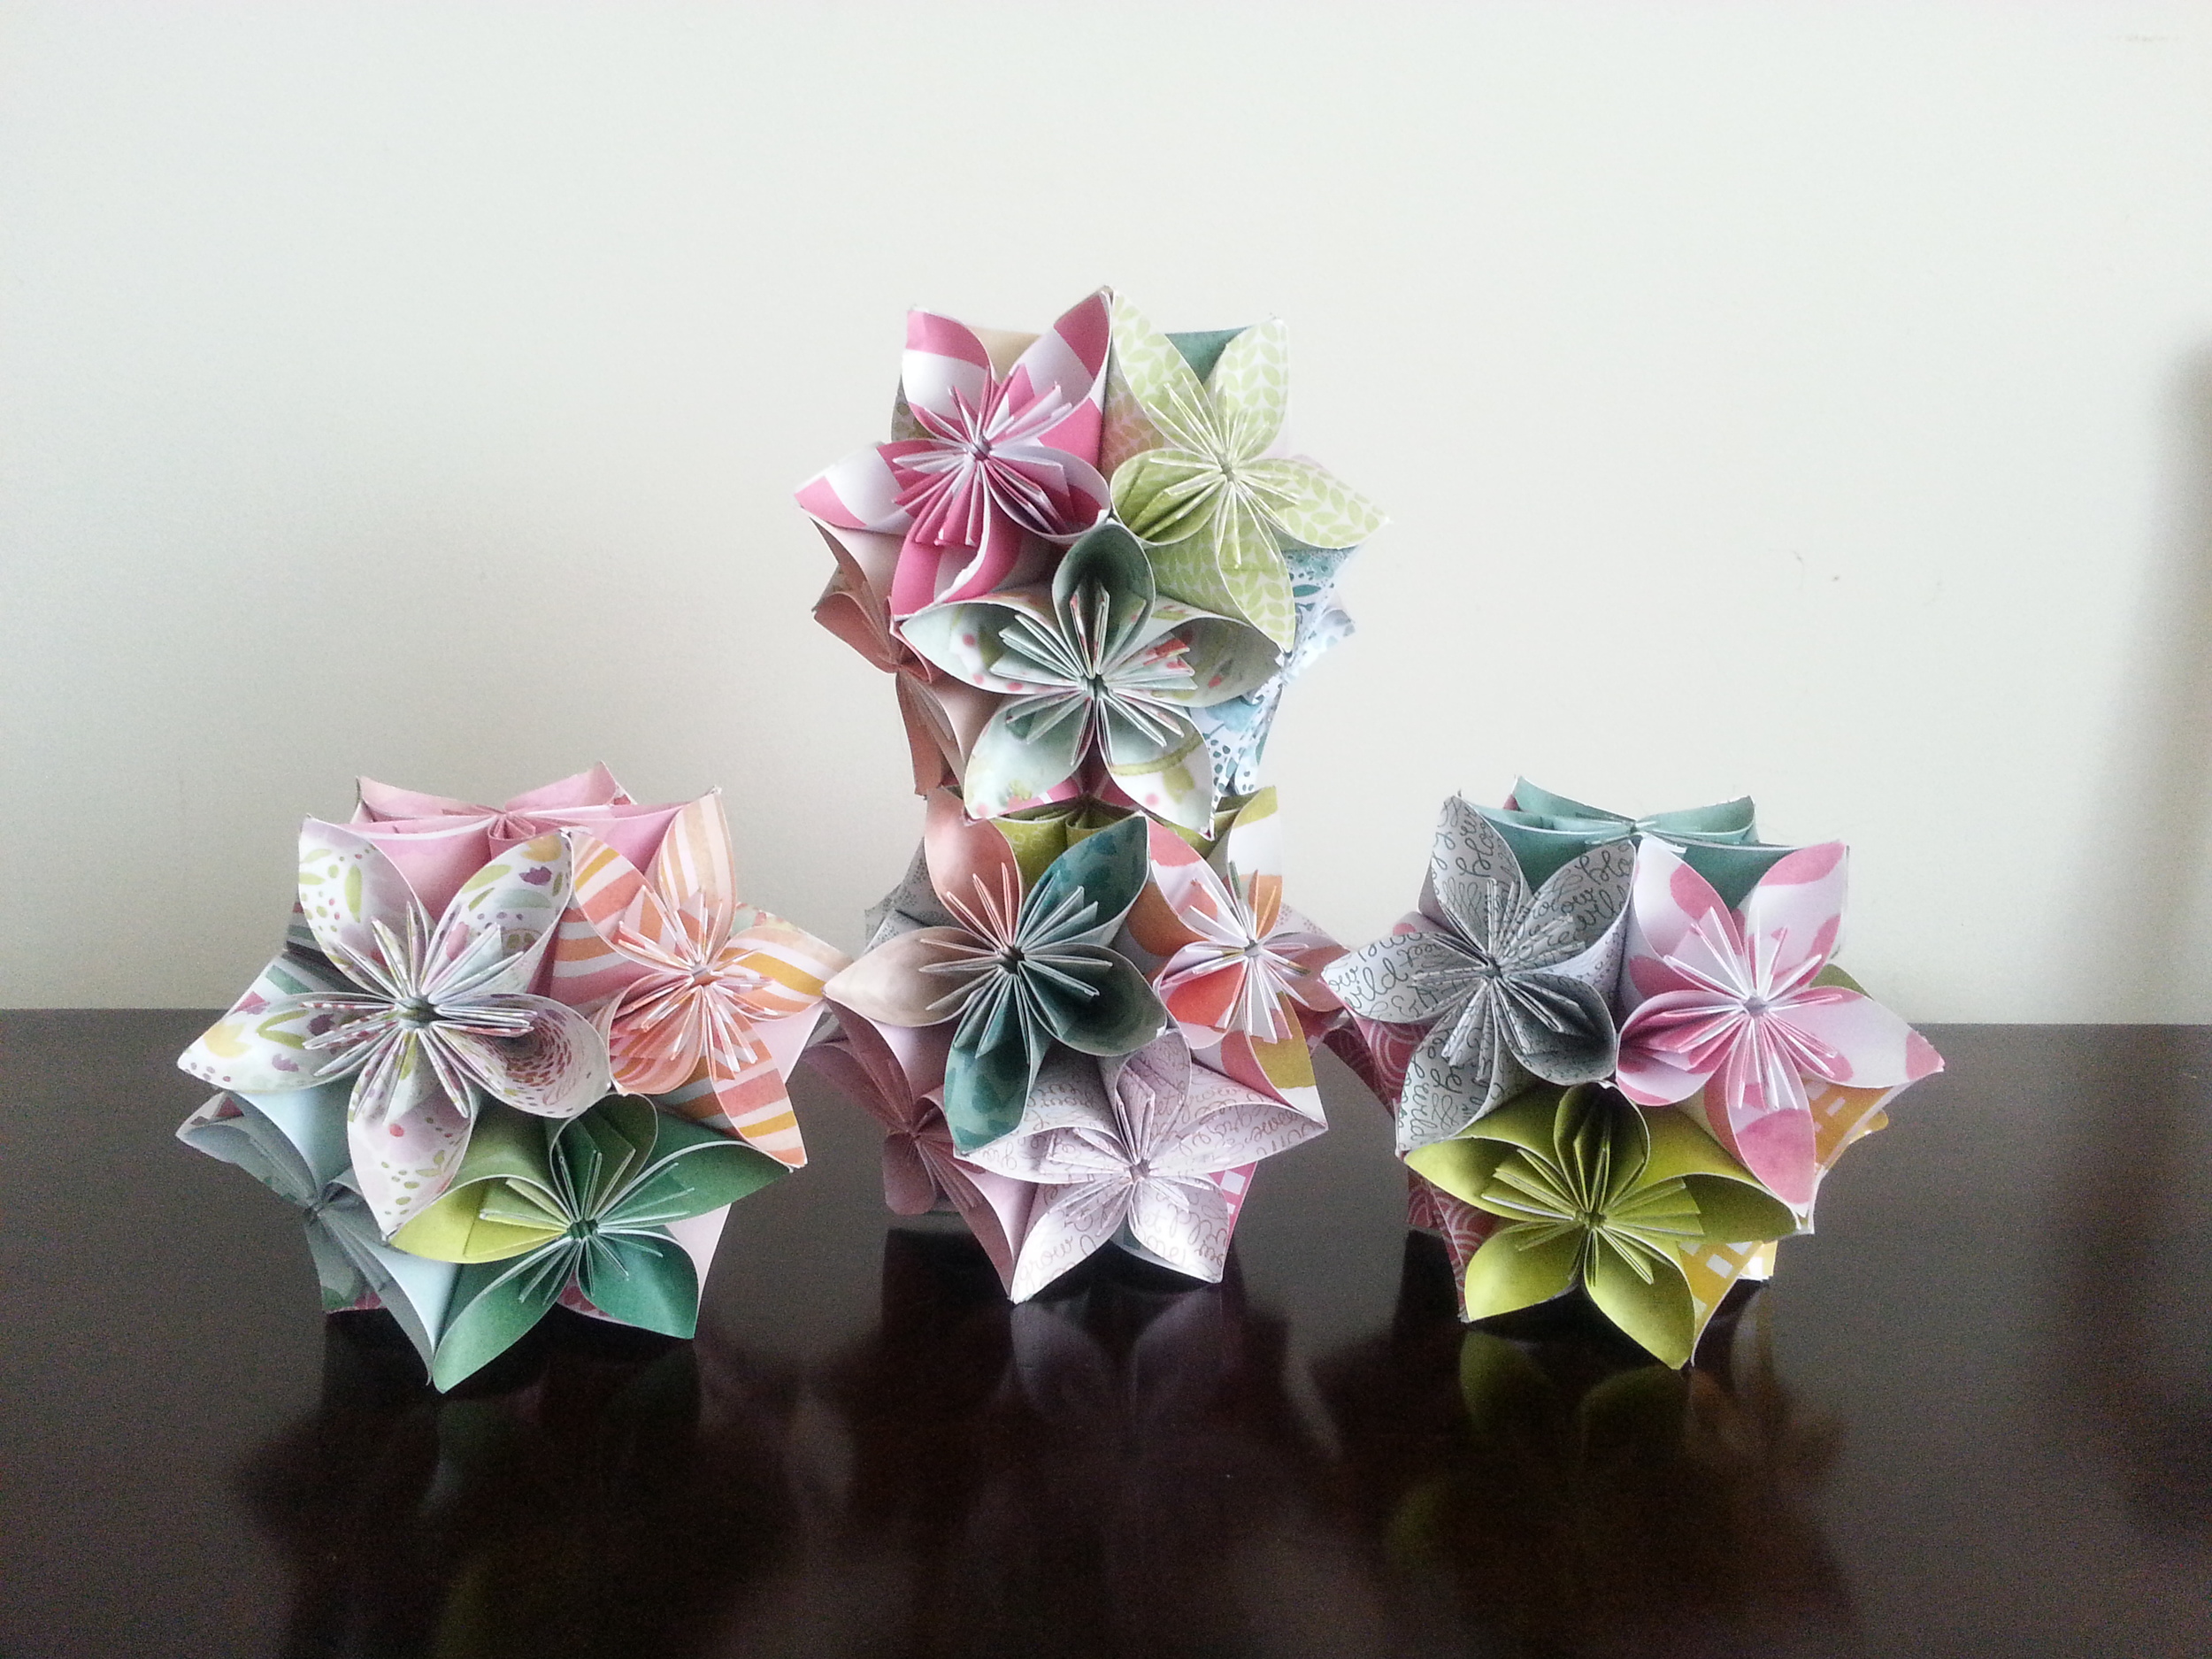 more origami flower balls - stack 'em!